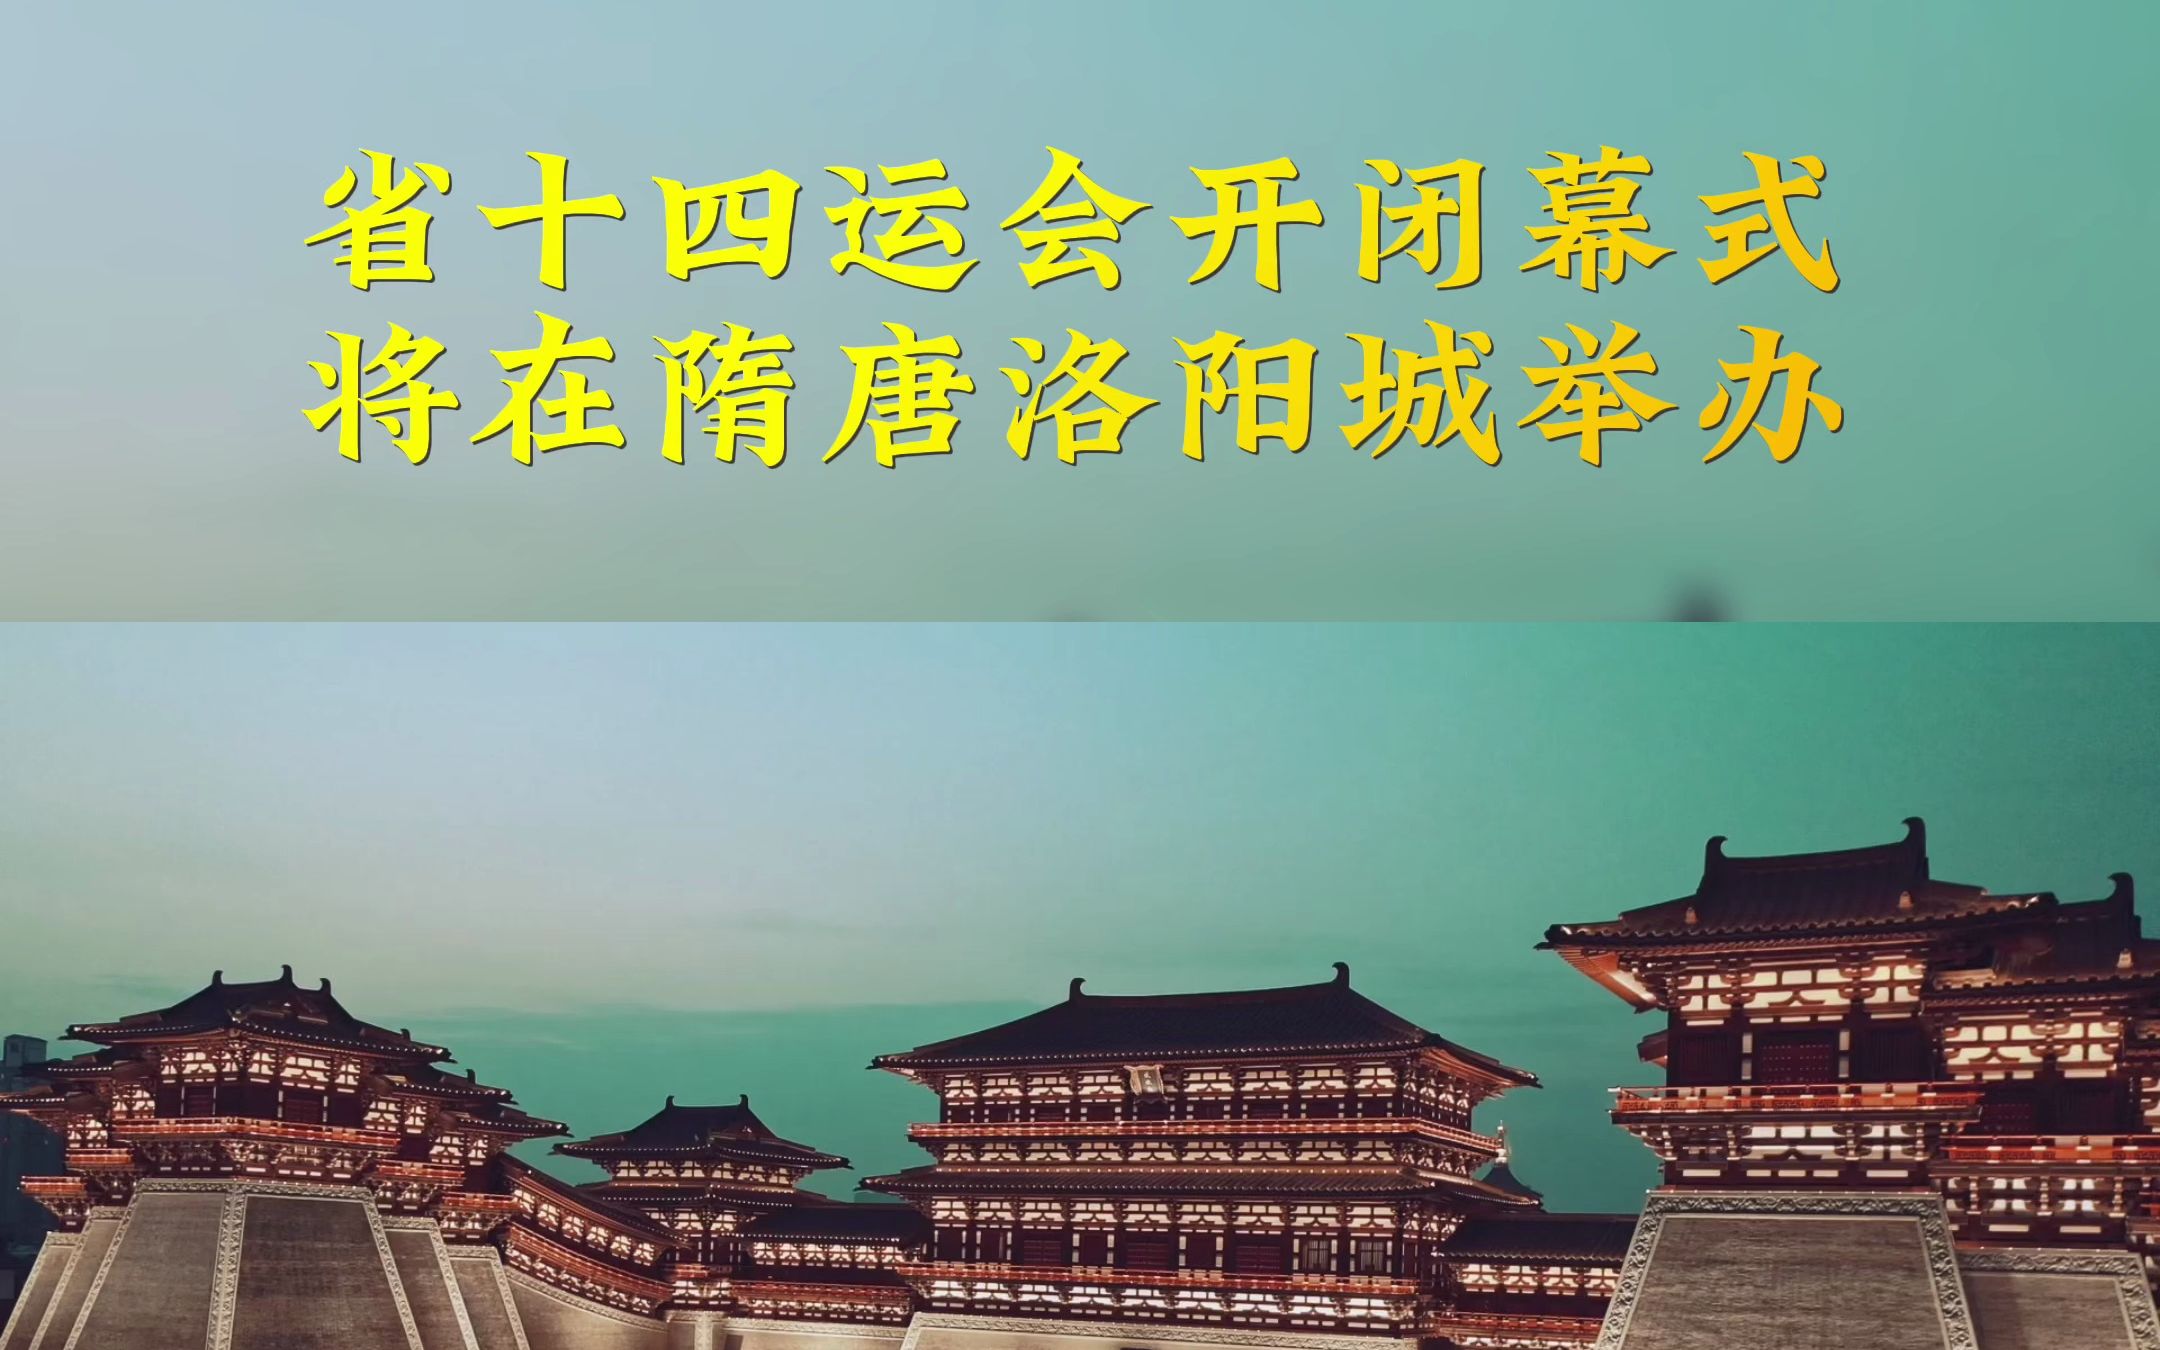 河南省第十四届运动会开闭幕式将在隋唐洛阳城举办